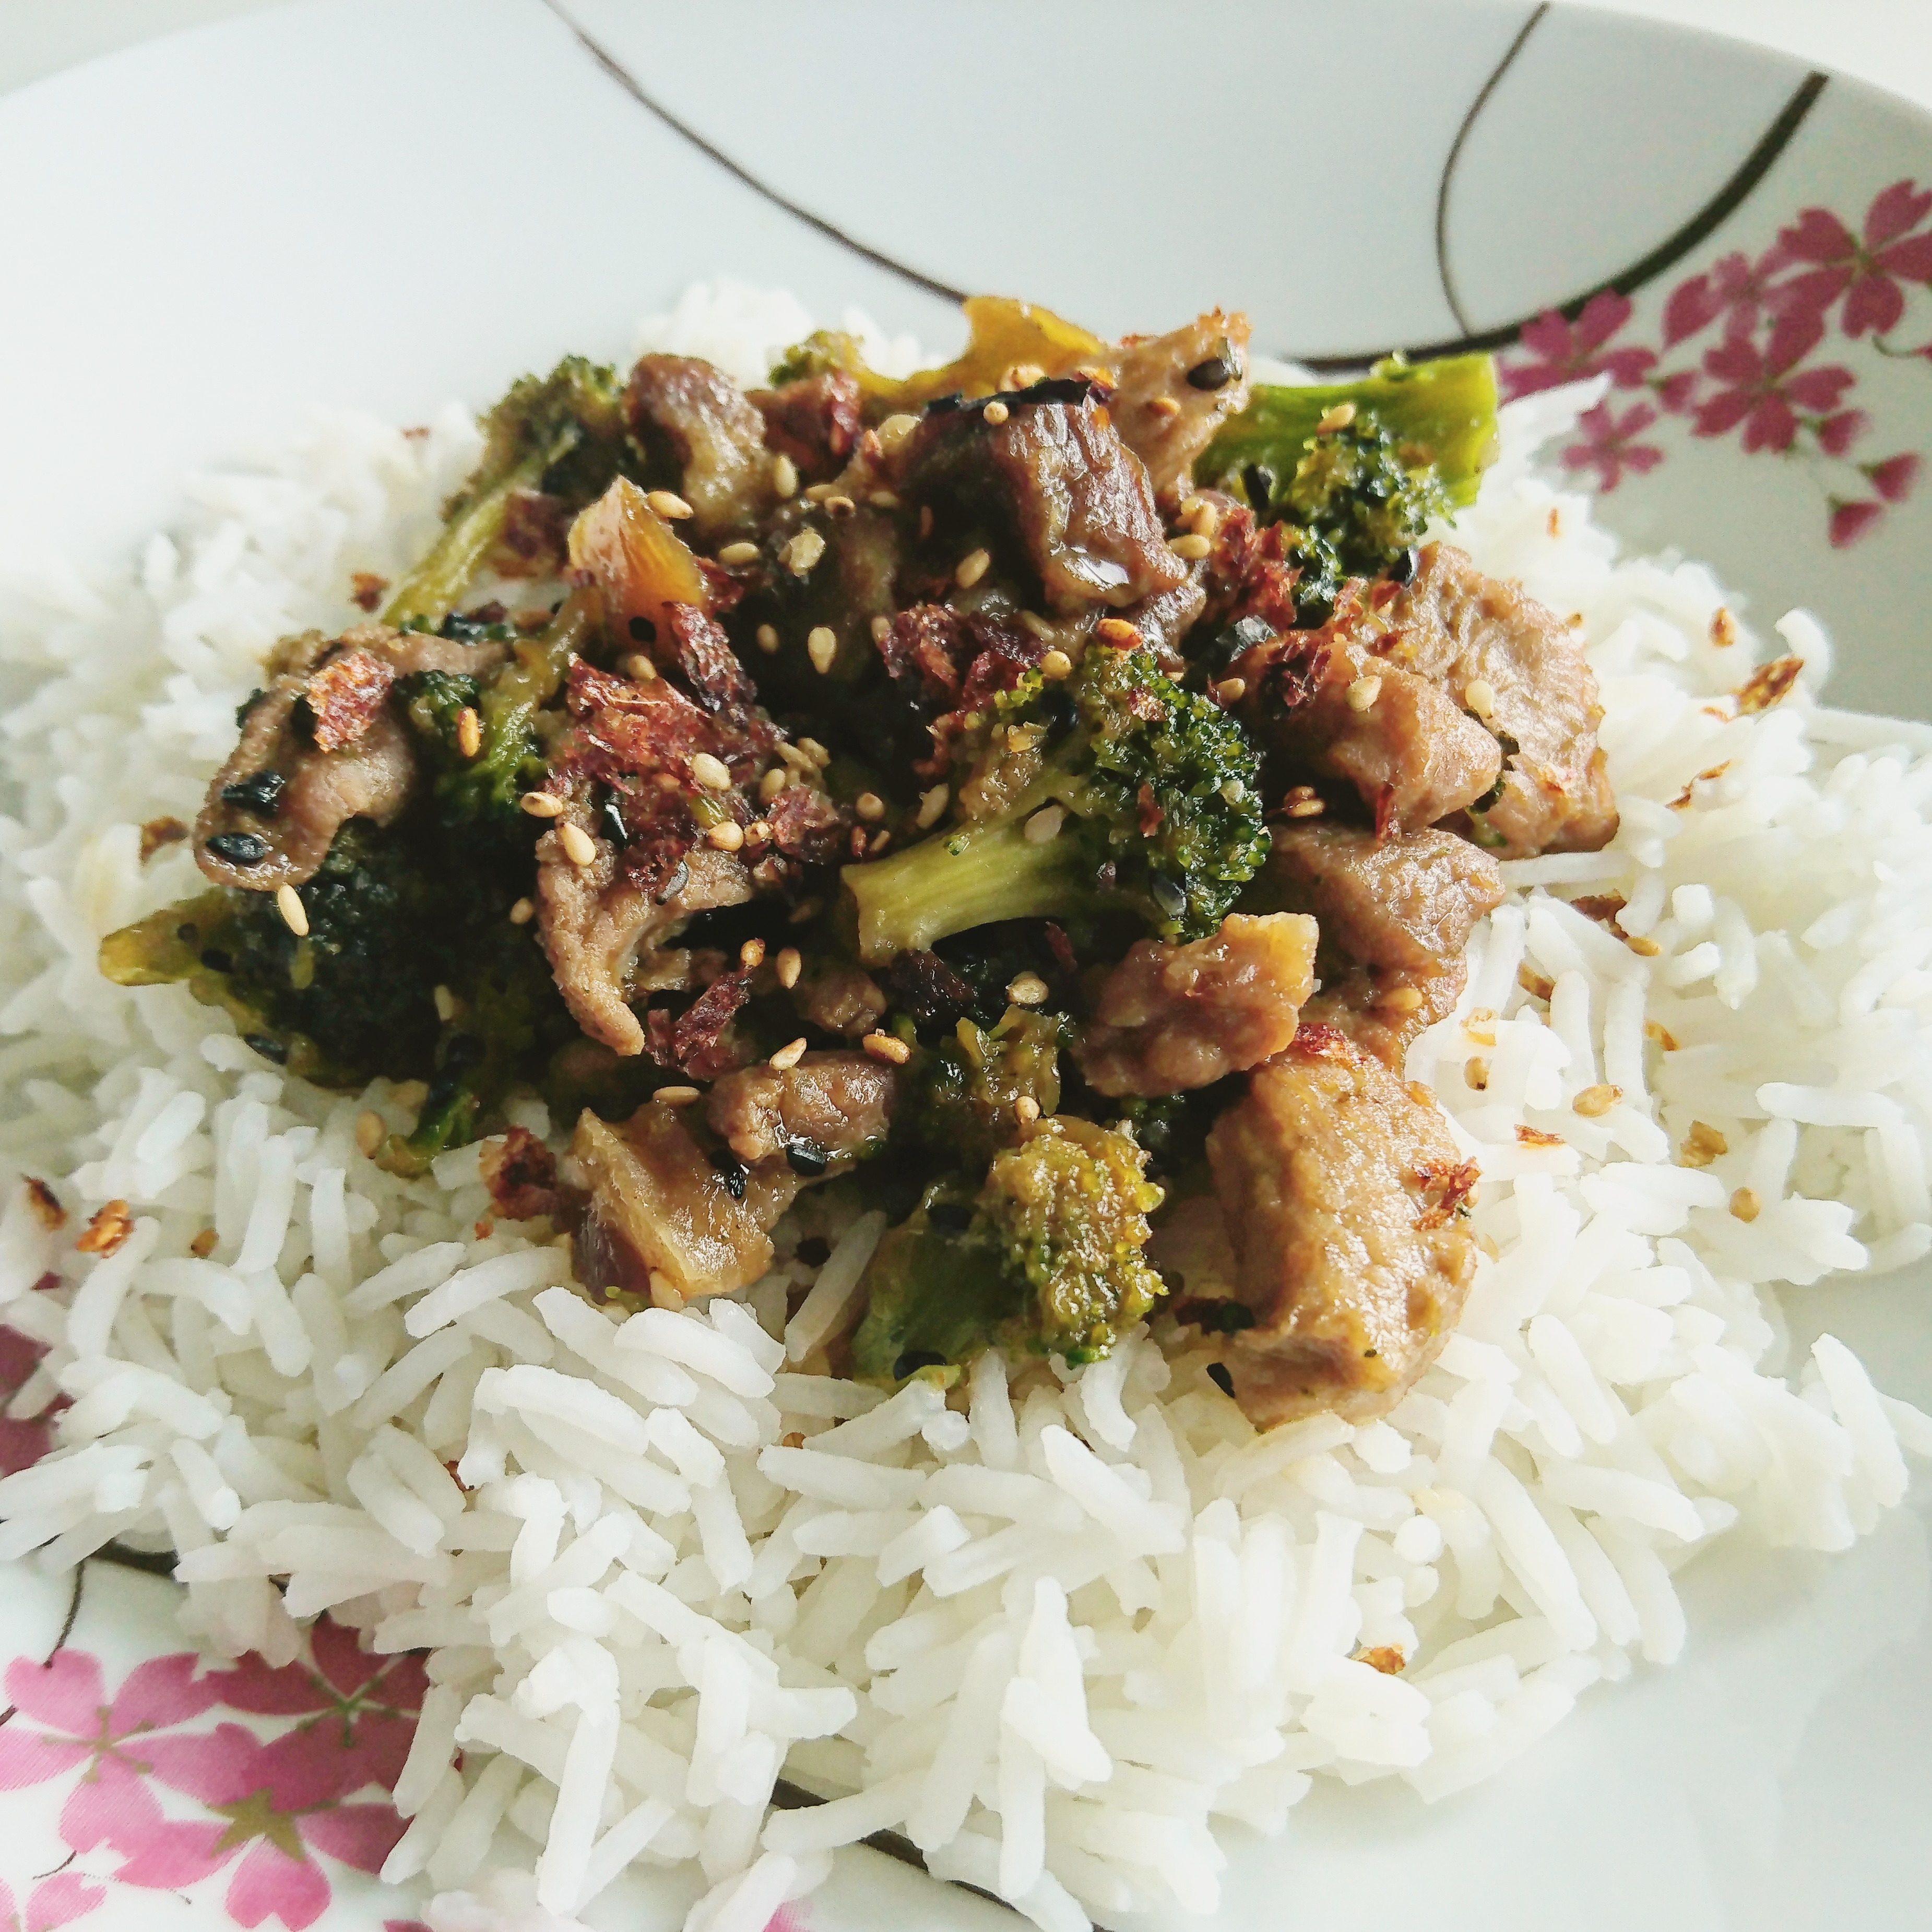 Teriyaki pork with broccoli and basmati rice